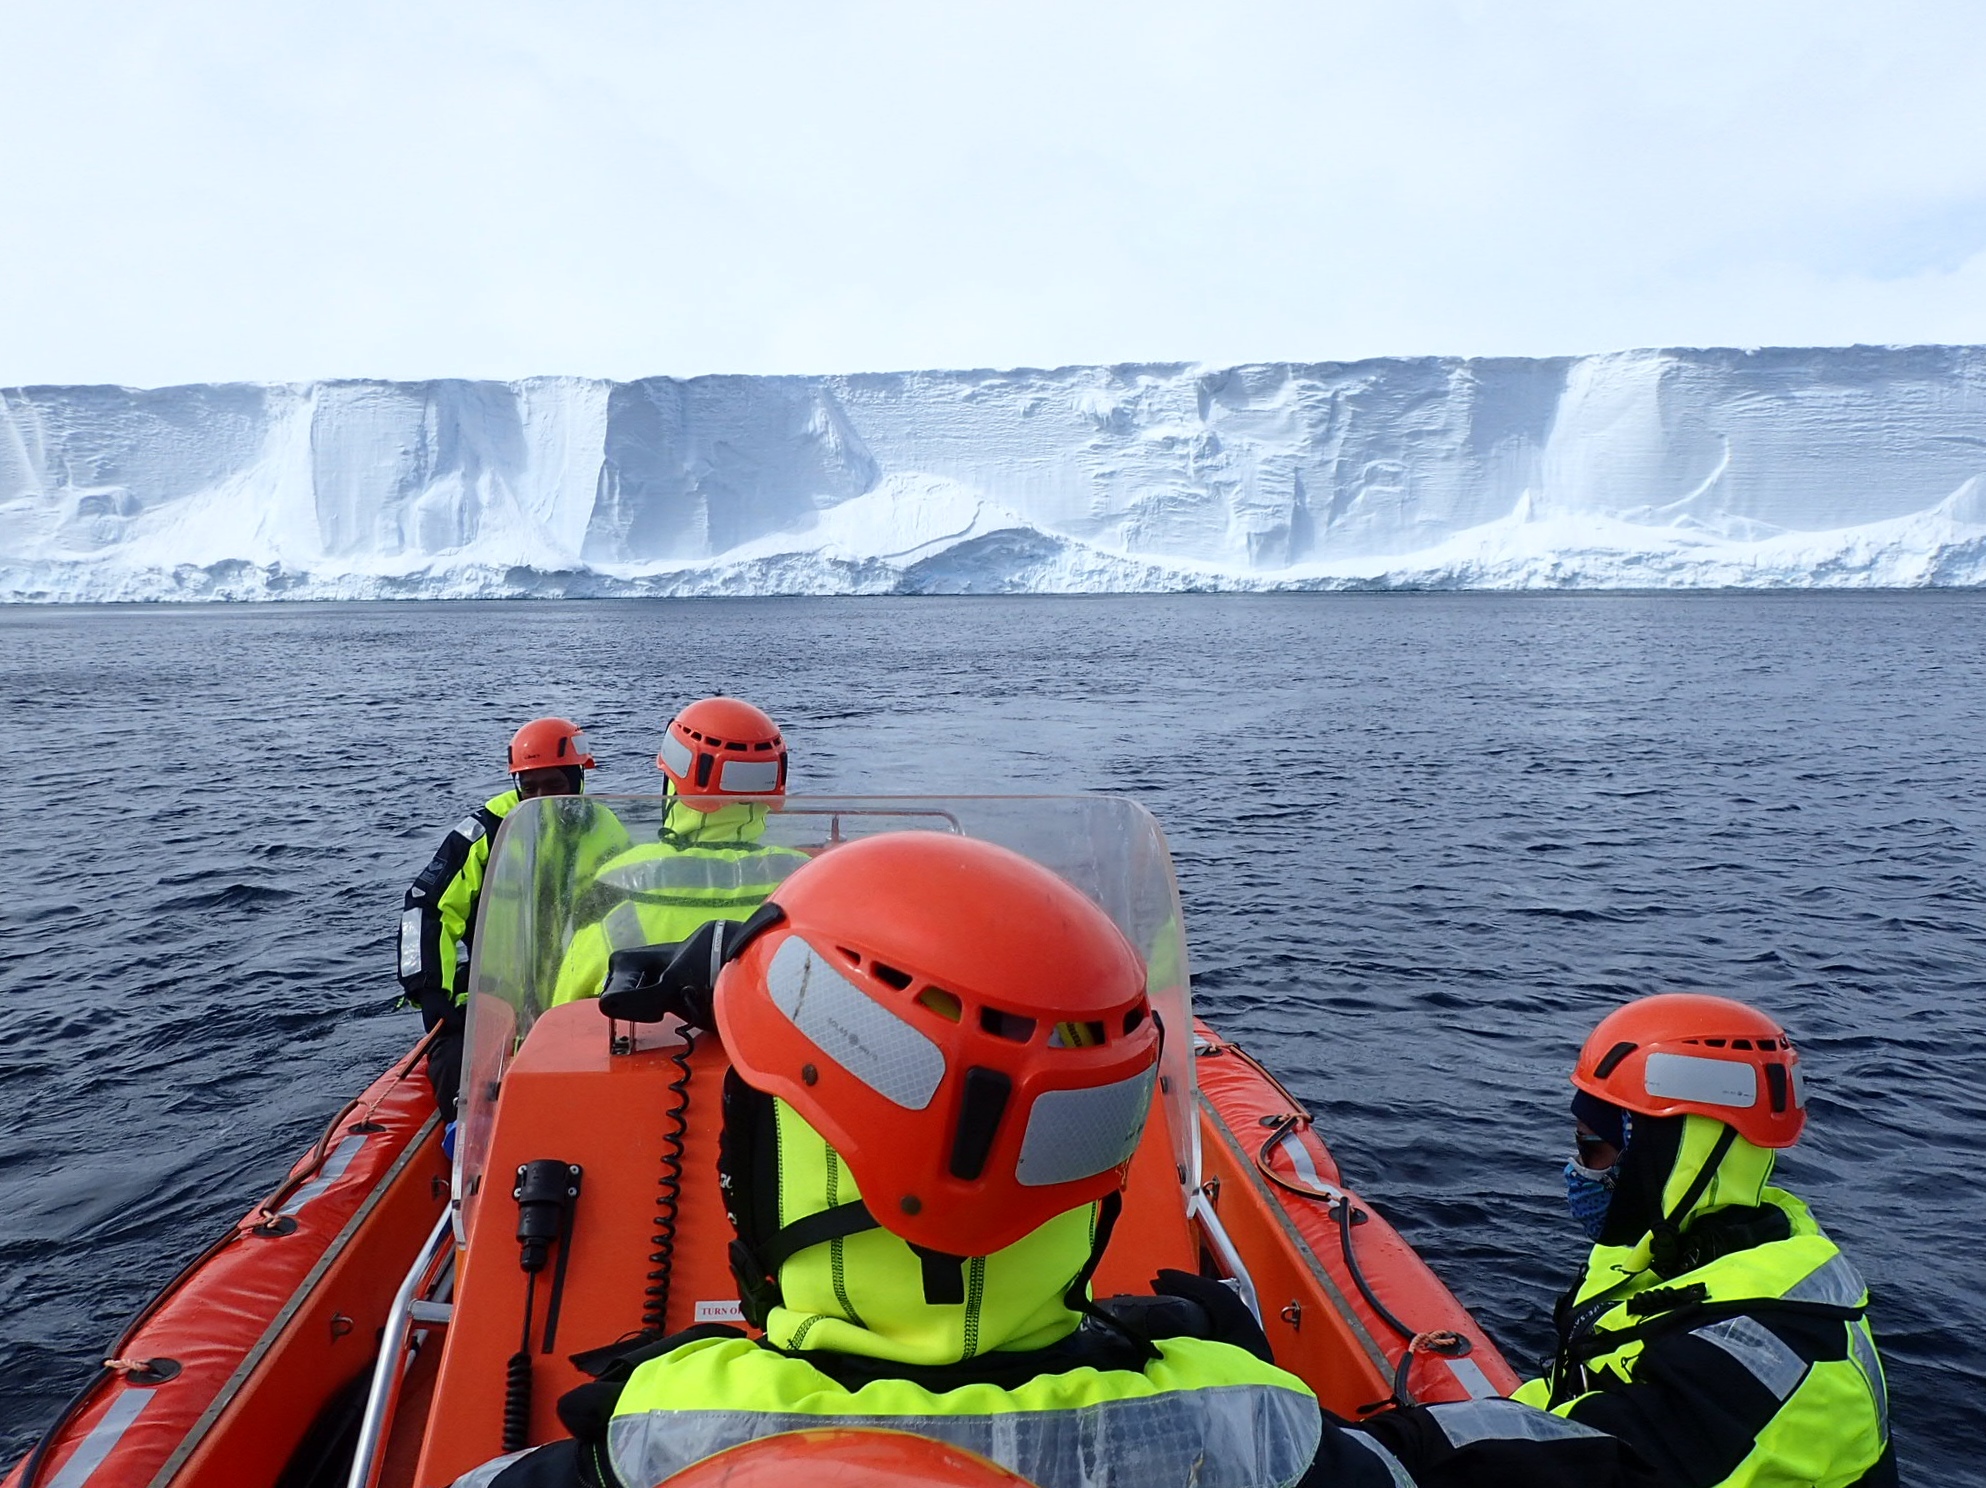 Sébastien Lavanchy prend part à l'expédition scientifique européenne "So-Chic" en Antarctique, à bord du brise-glace S.A Agulhas II